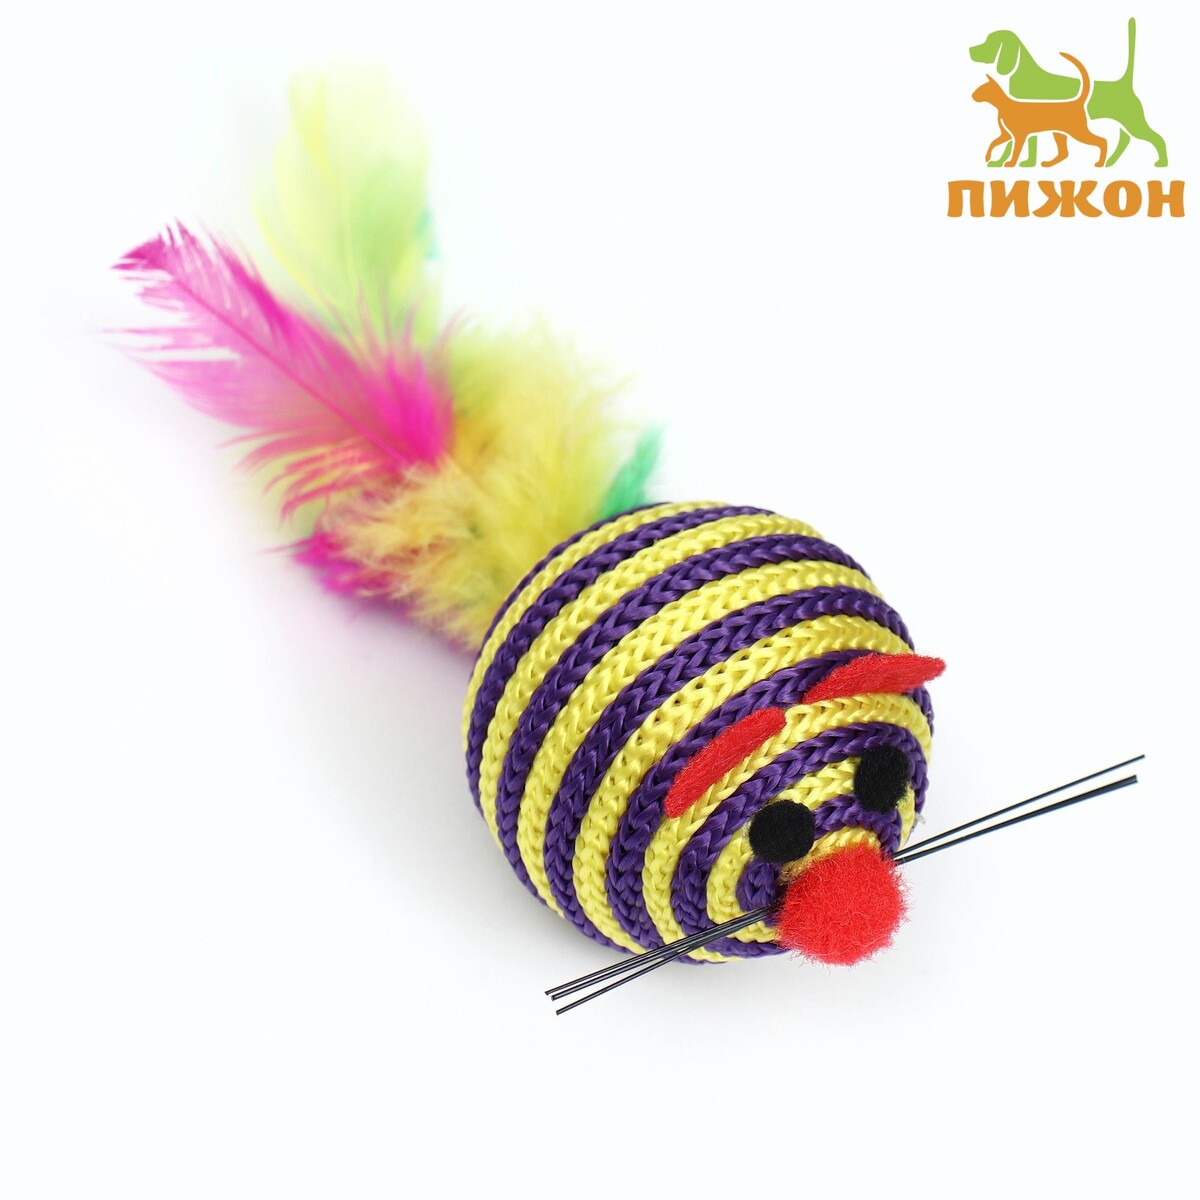 Шарик-мышь из текстиля с перьями, 4,2 см, фиолетовая мышь defender shepard gm 620l